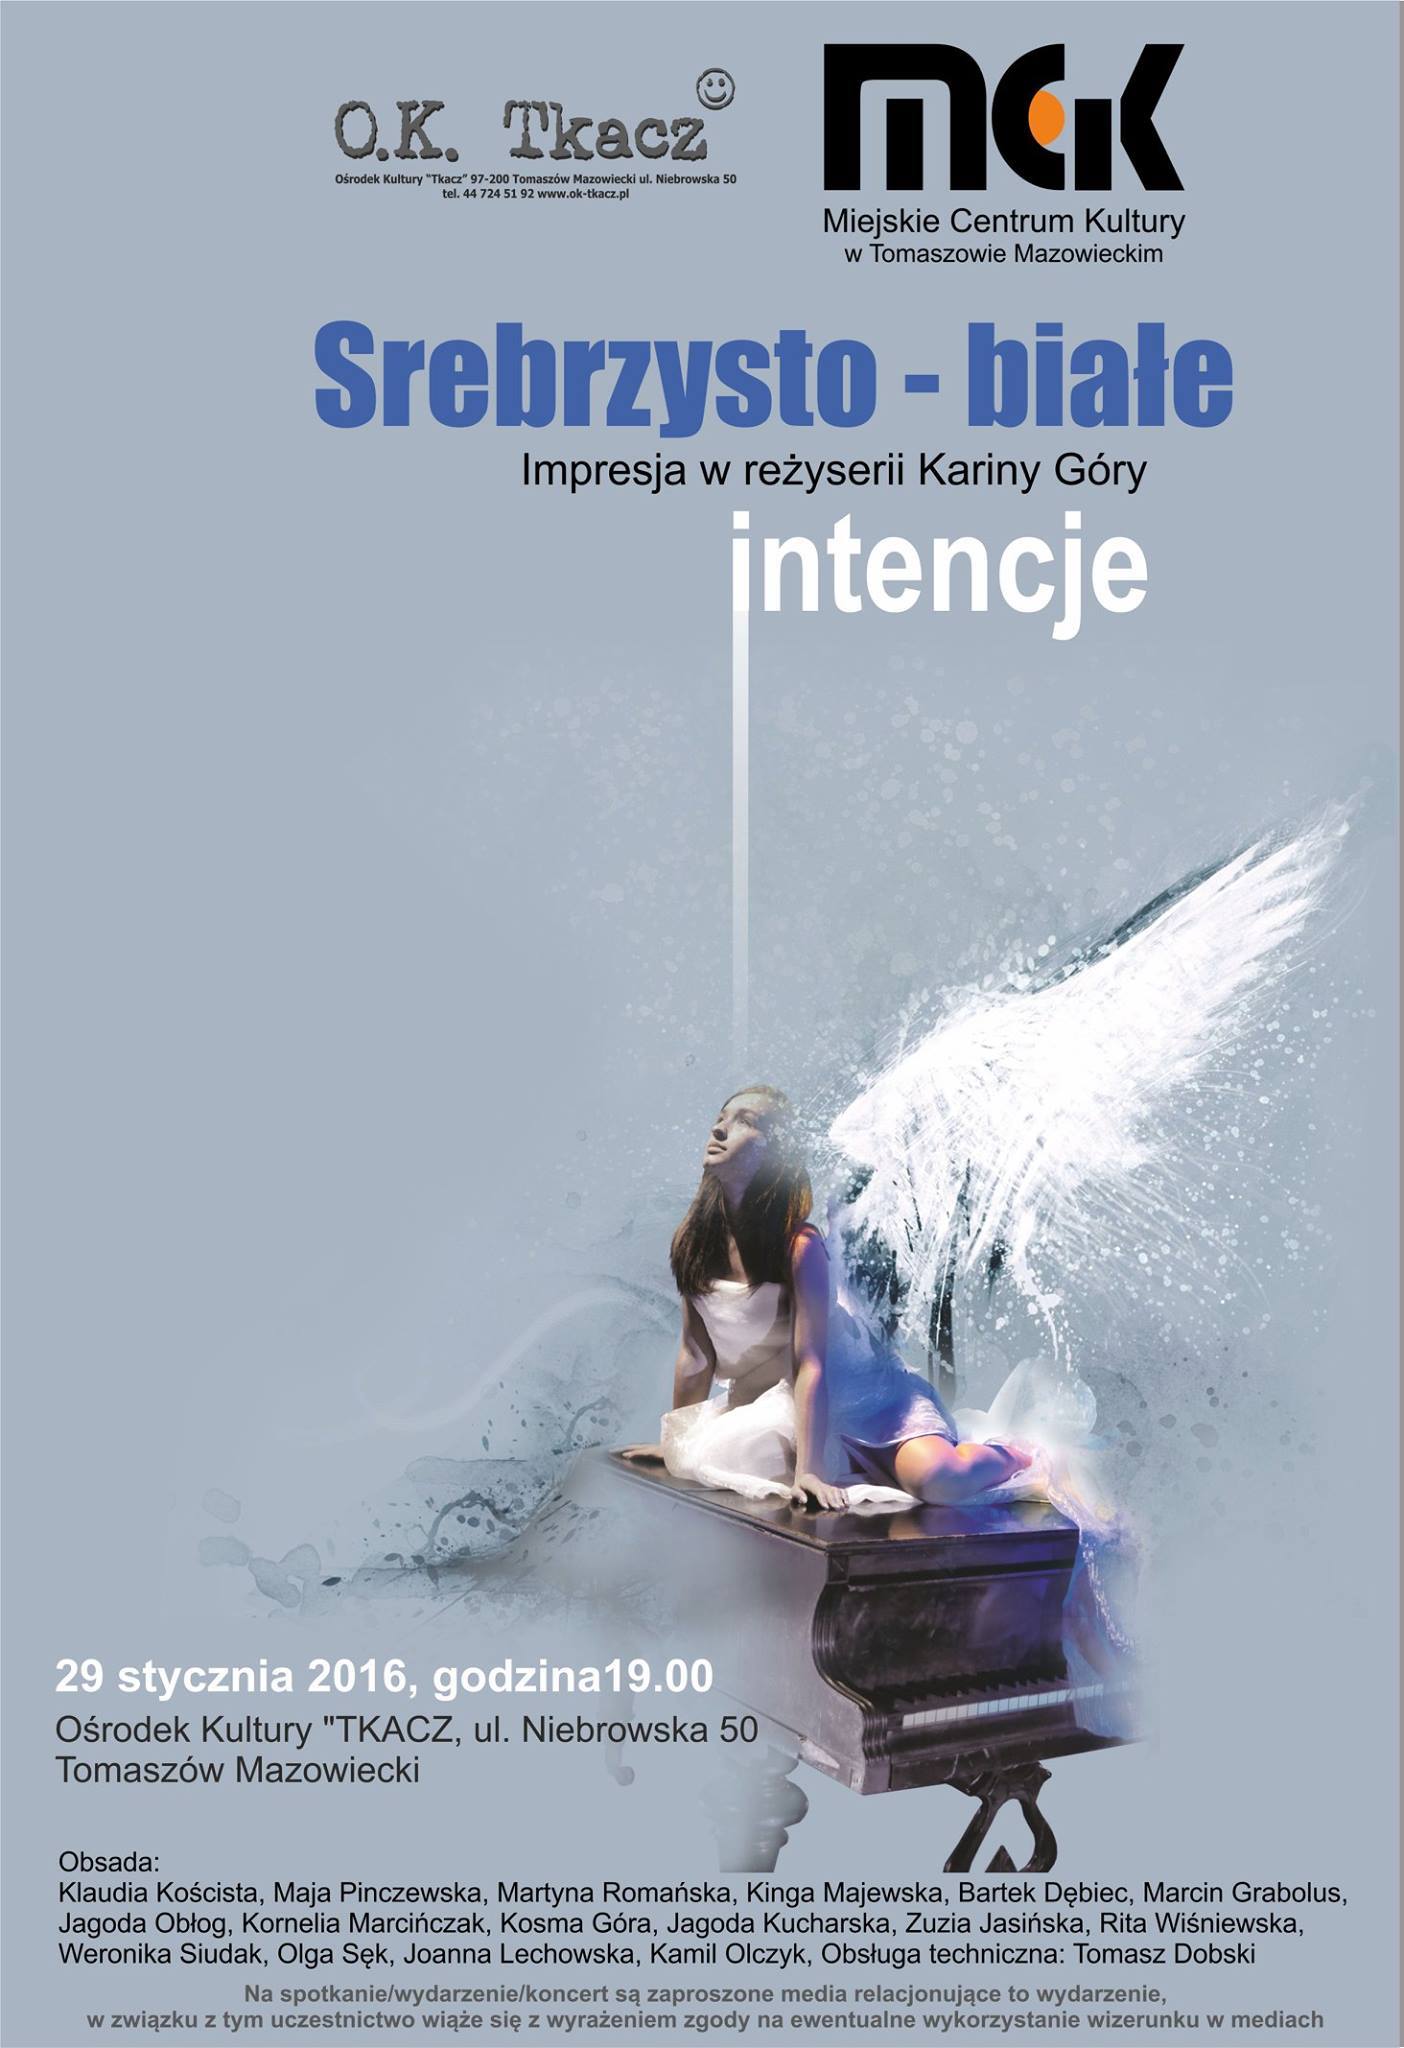 Plakat przedstawienia "Srebrzysto - Białe intencje"